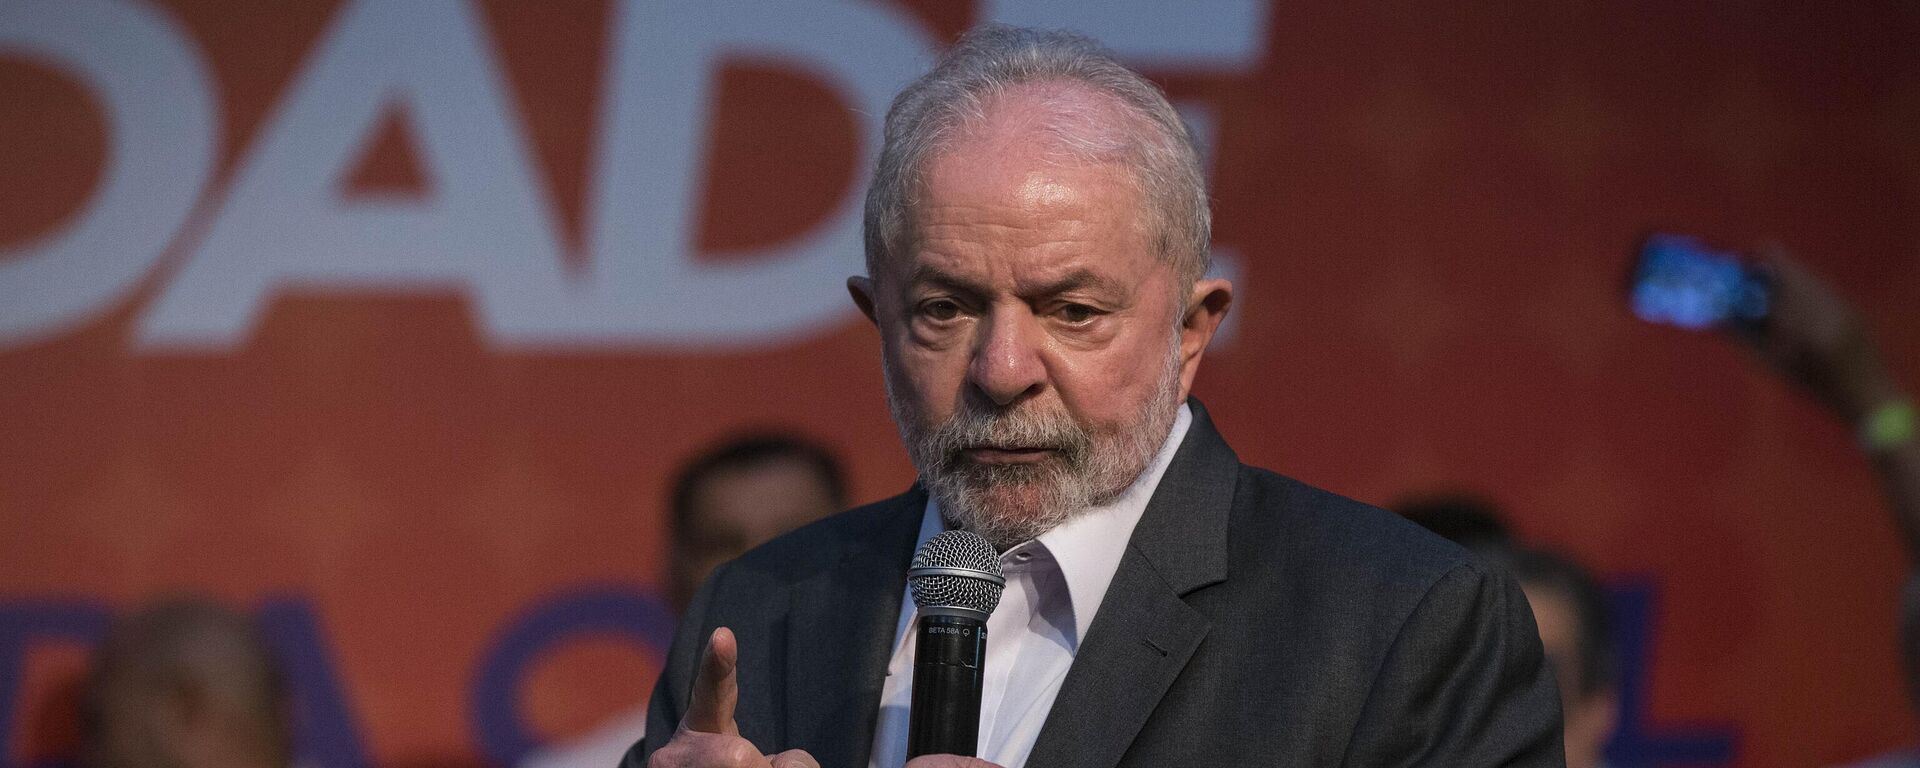 Ex-presidente Luiz Inácio Lula da Silva (PT) participa de evento promovido pelo partido Solidariedade, em 3 de maio de 2022 - Sputnik Brasil, 1920, 04.05.2022